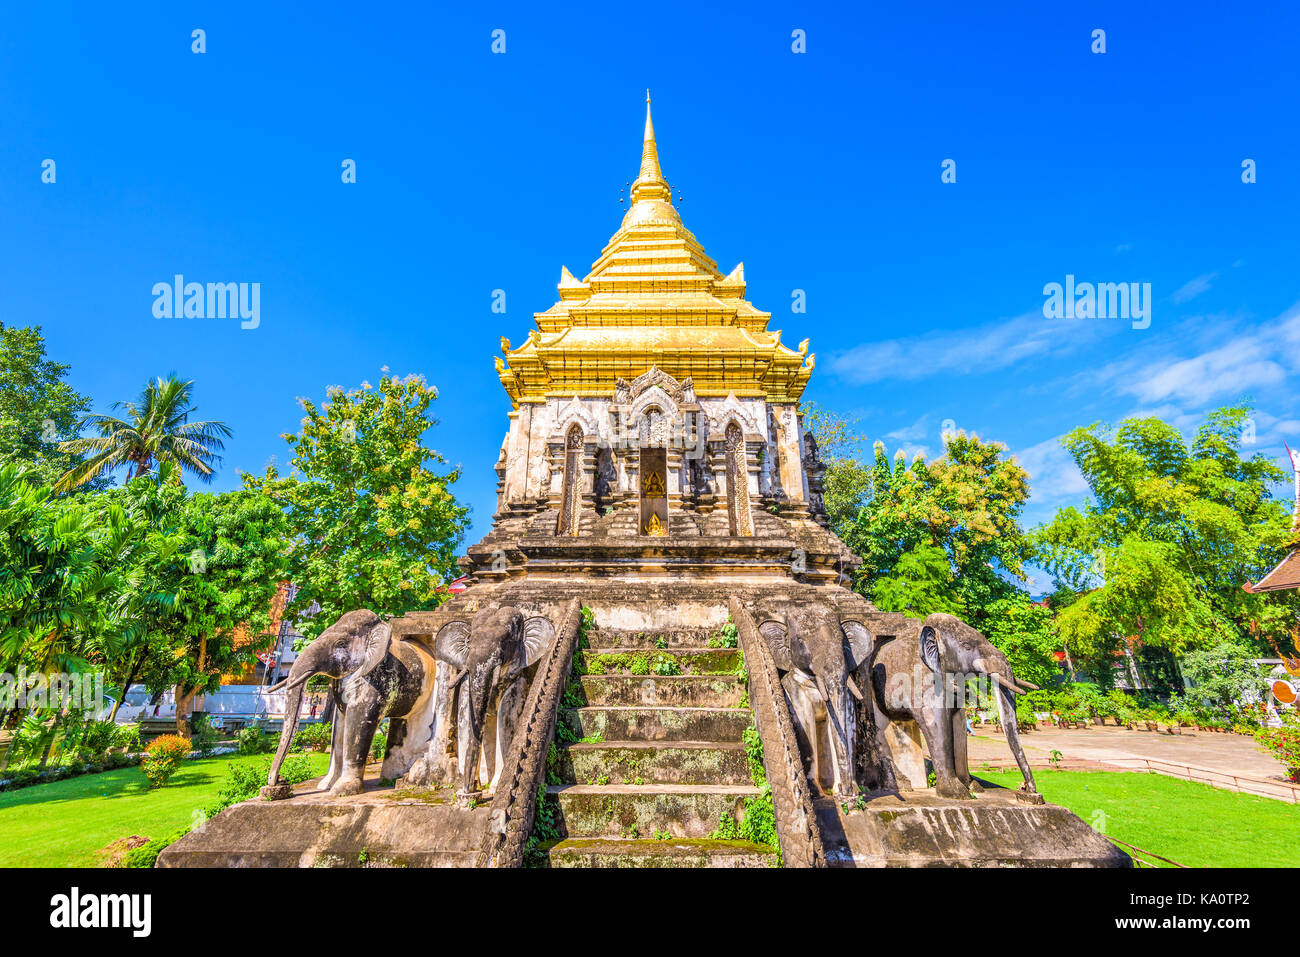 Chiang Mai, Thailand at Wat Chiang Man. Stock Photo